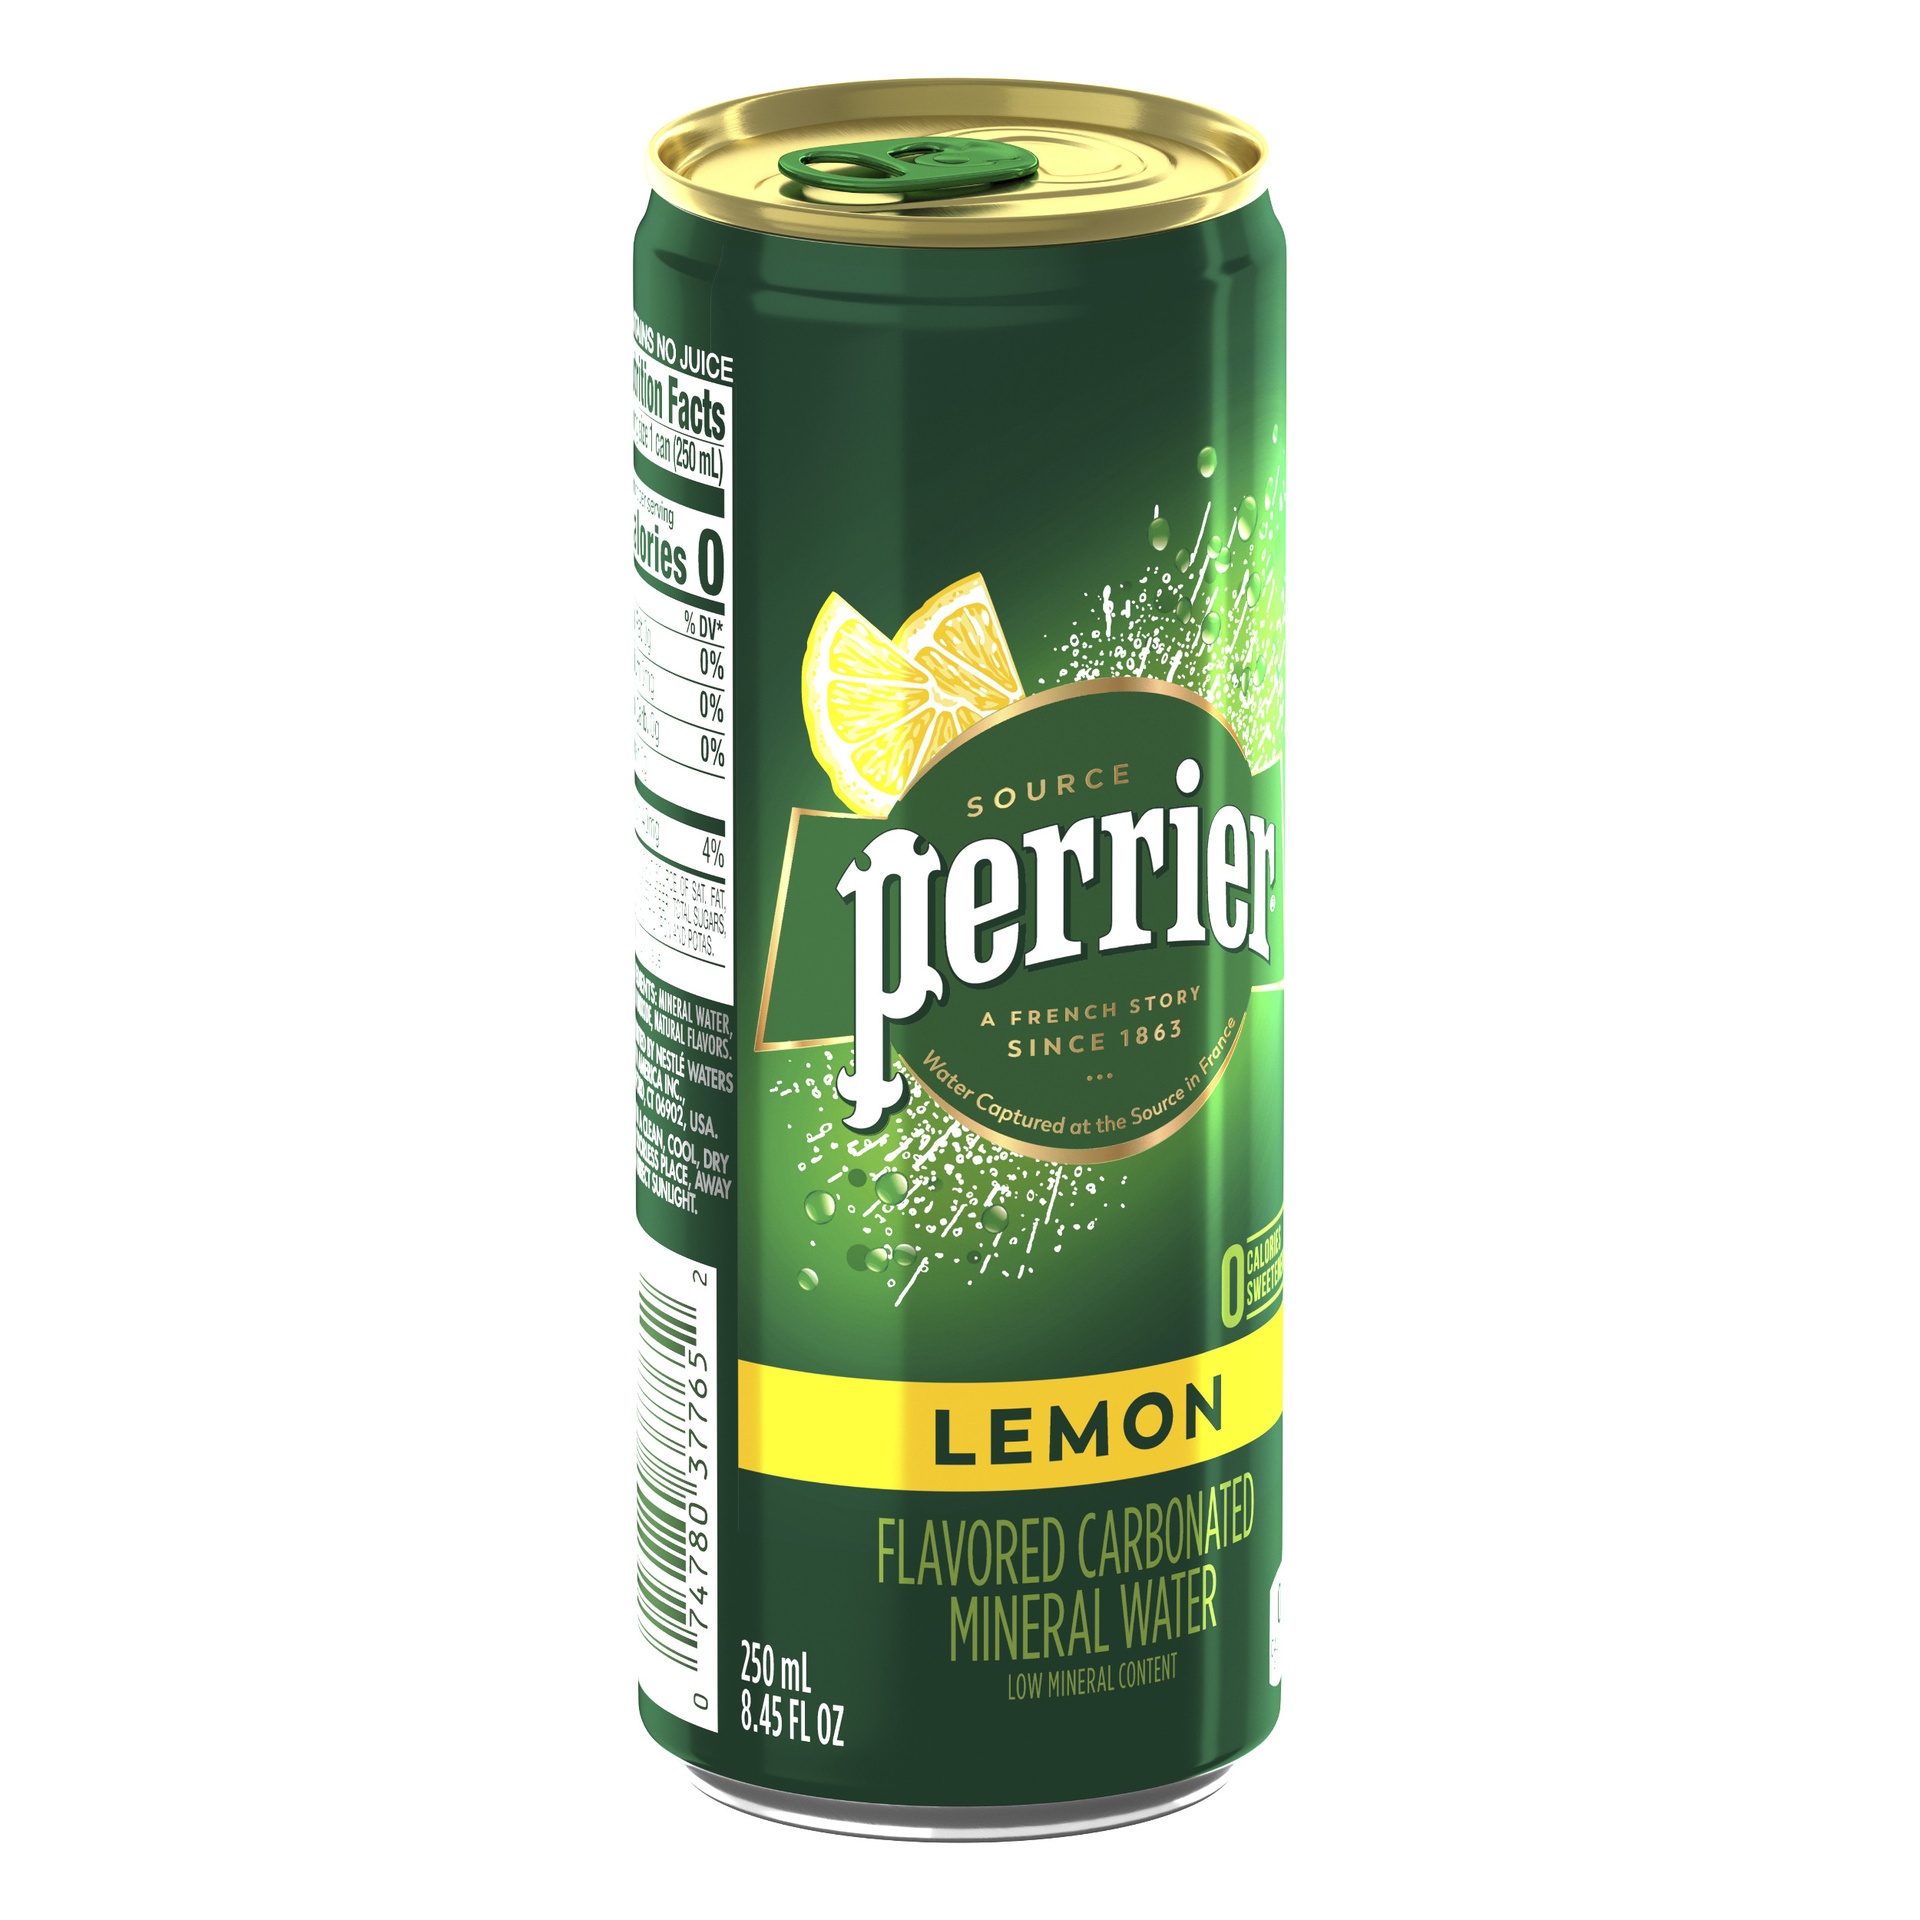 Perrier Original Lemon (Slim Can) 25CL